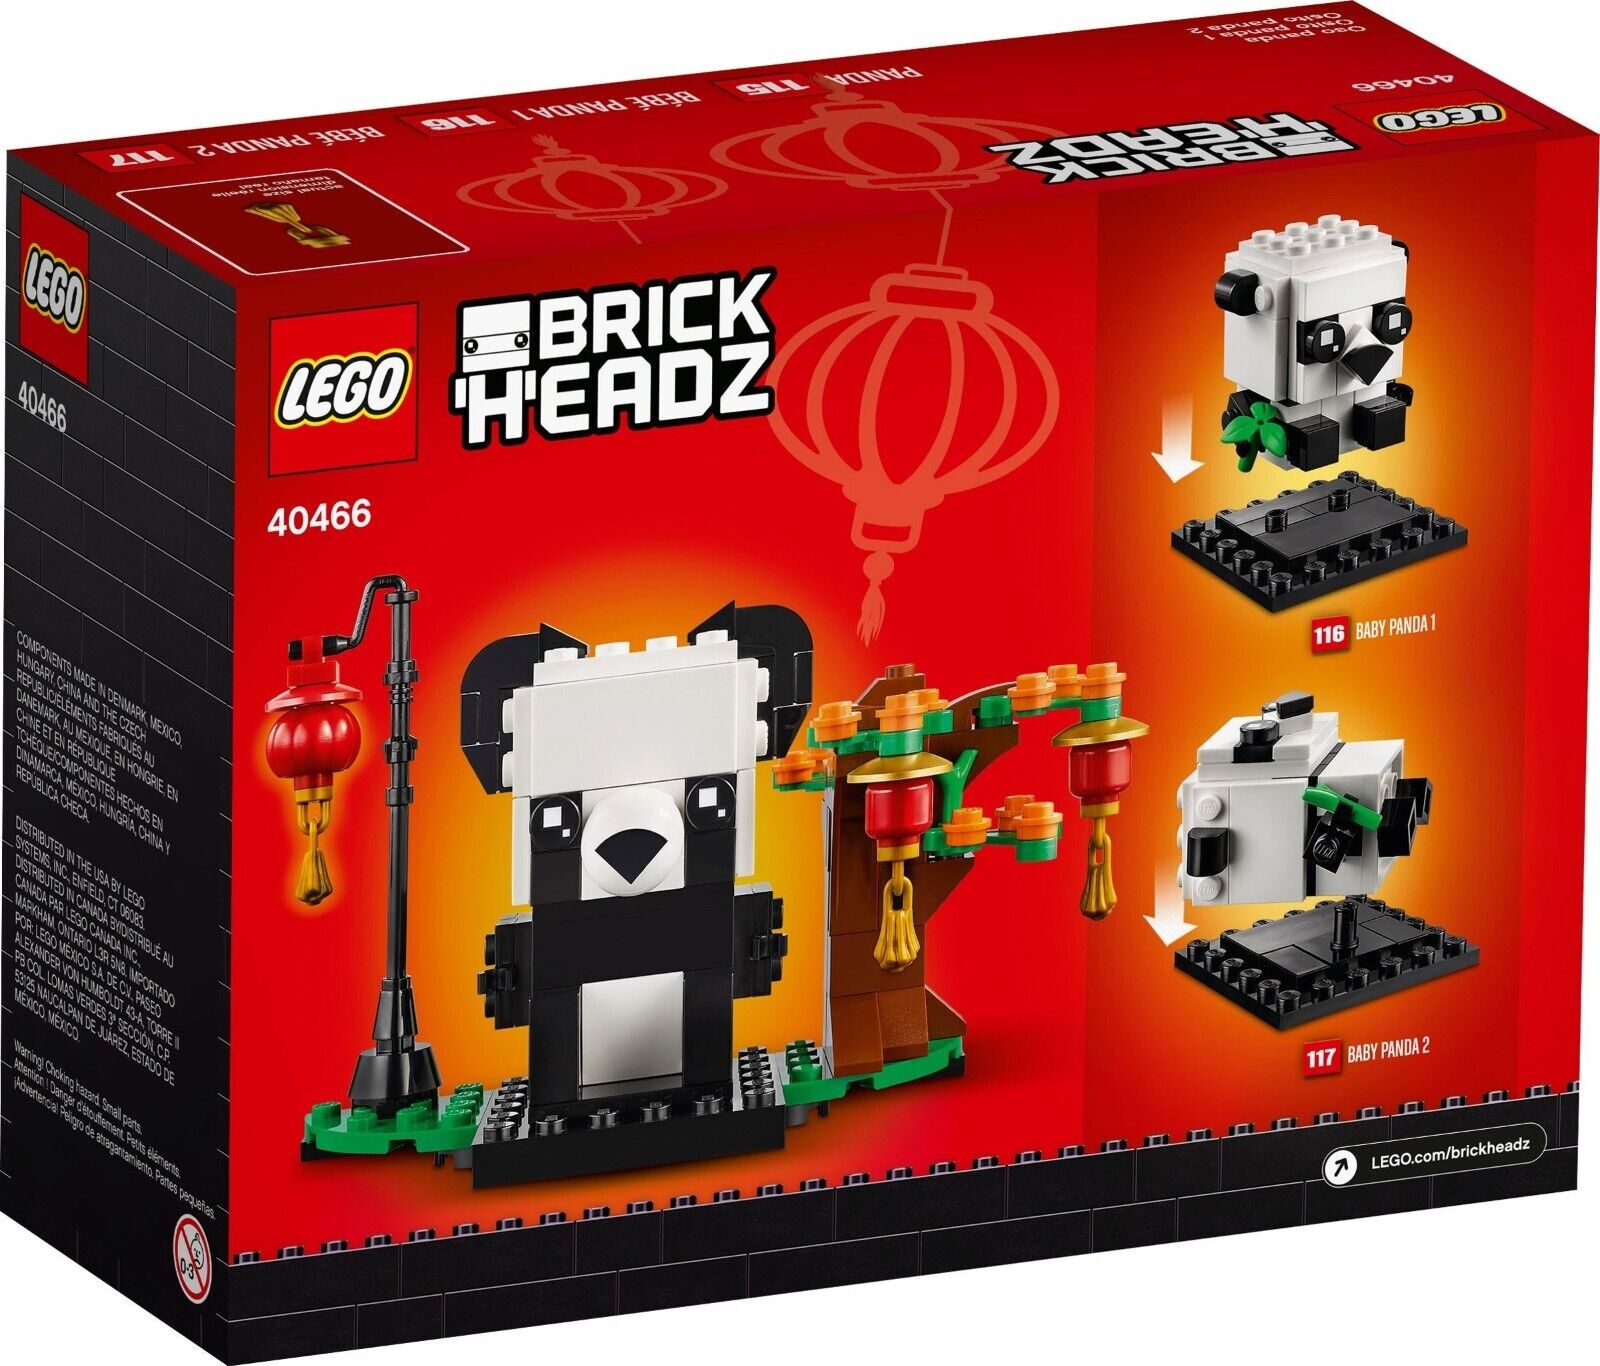 LEGO Brickheadz 40466 Chinese New Year Pandas - Brand New In Box - RETIRED 2022